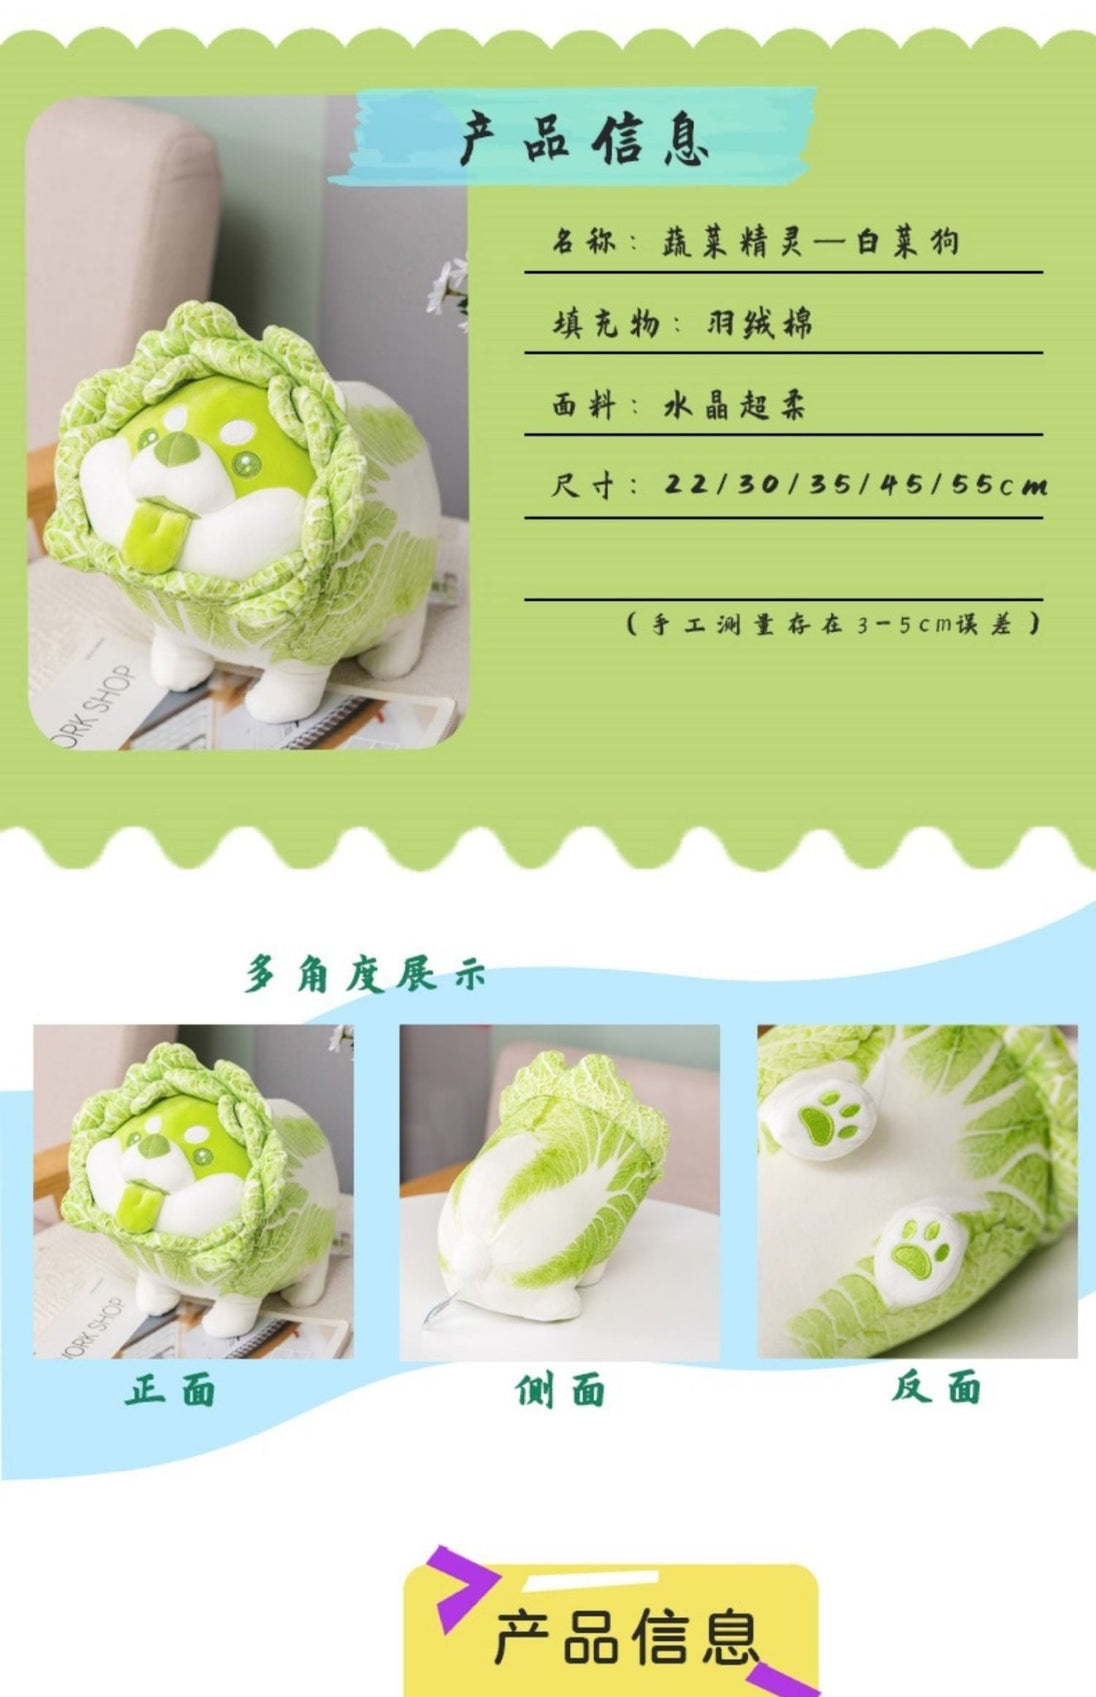 Cabbage Dog Plush Toy - 3C Easy Markham